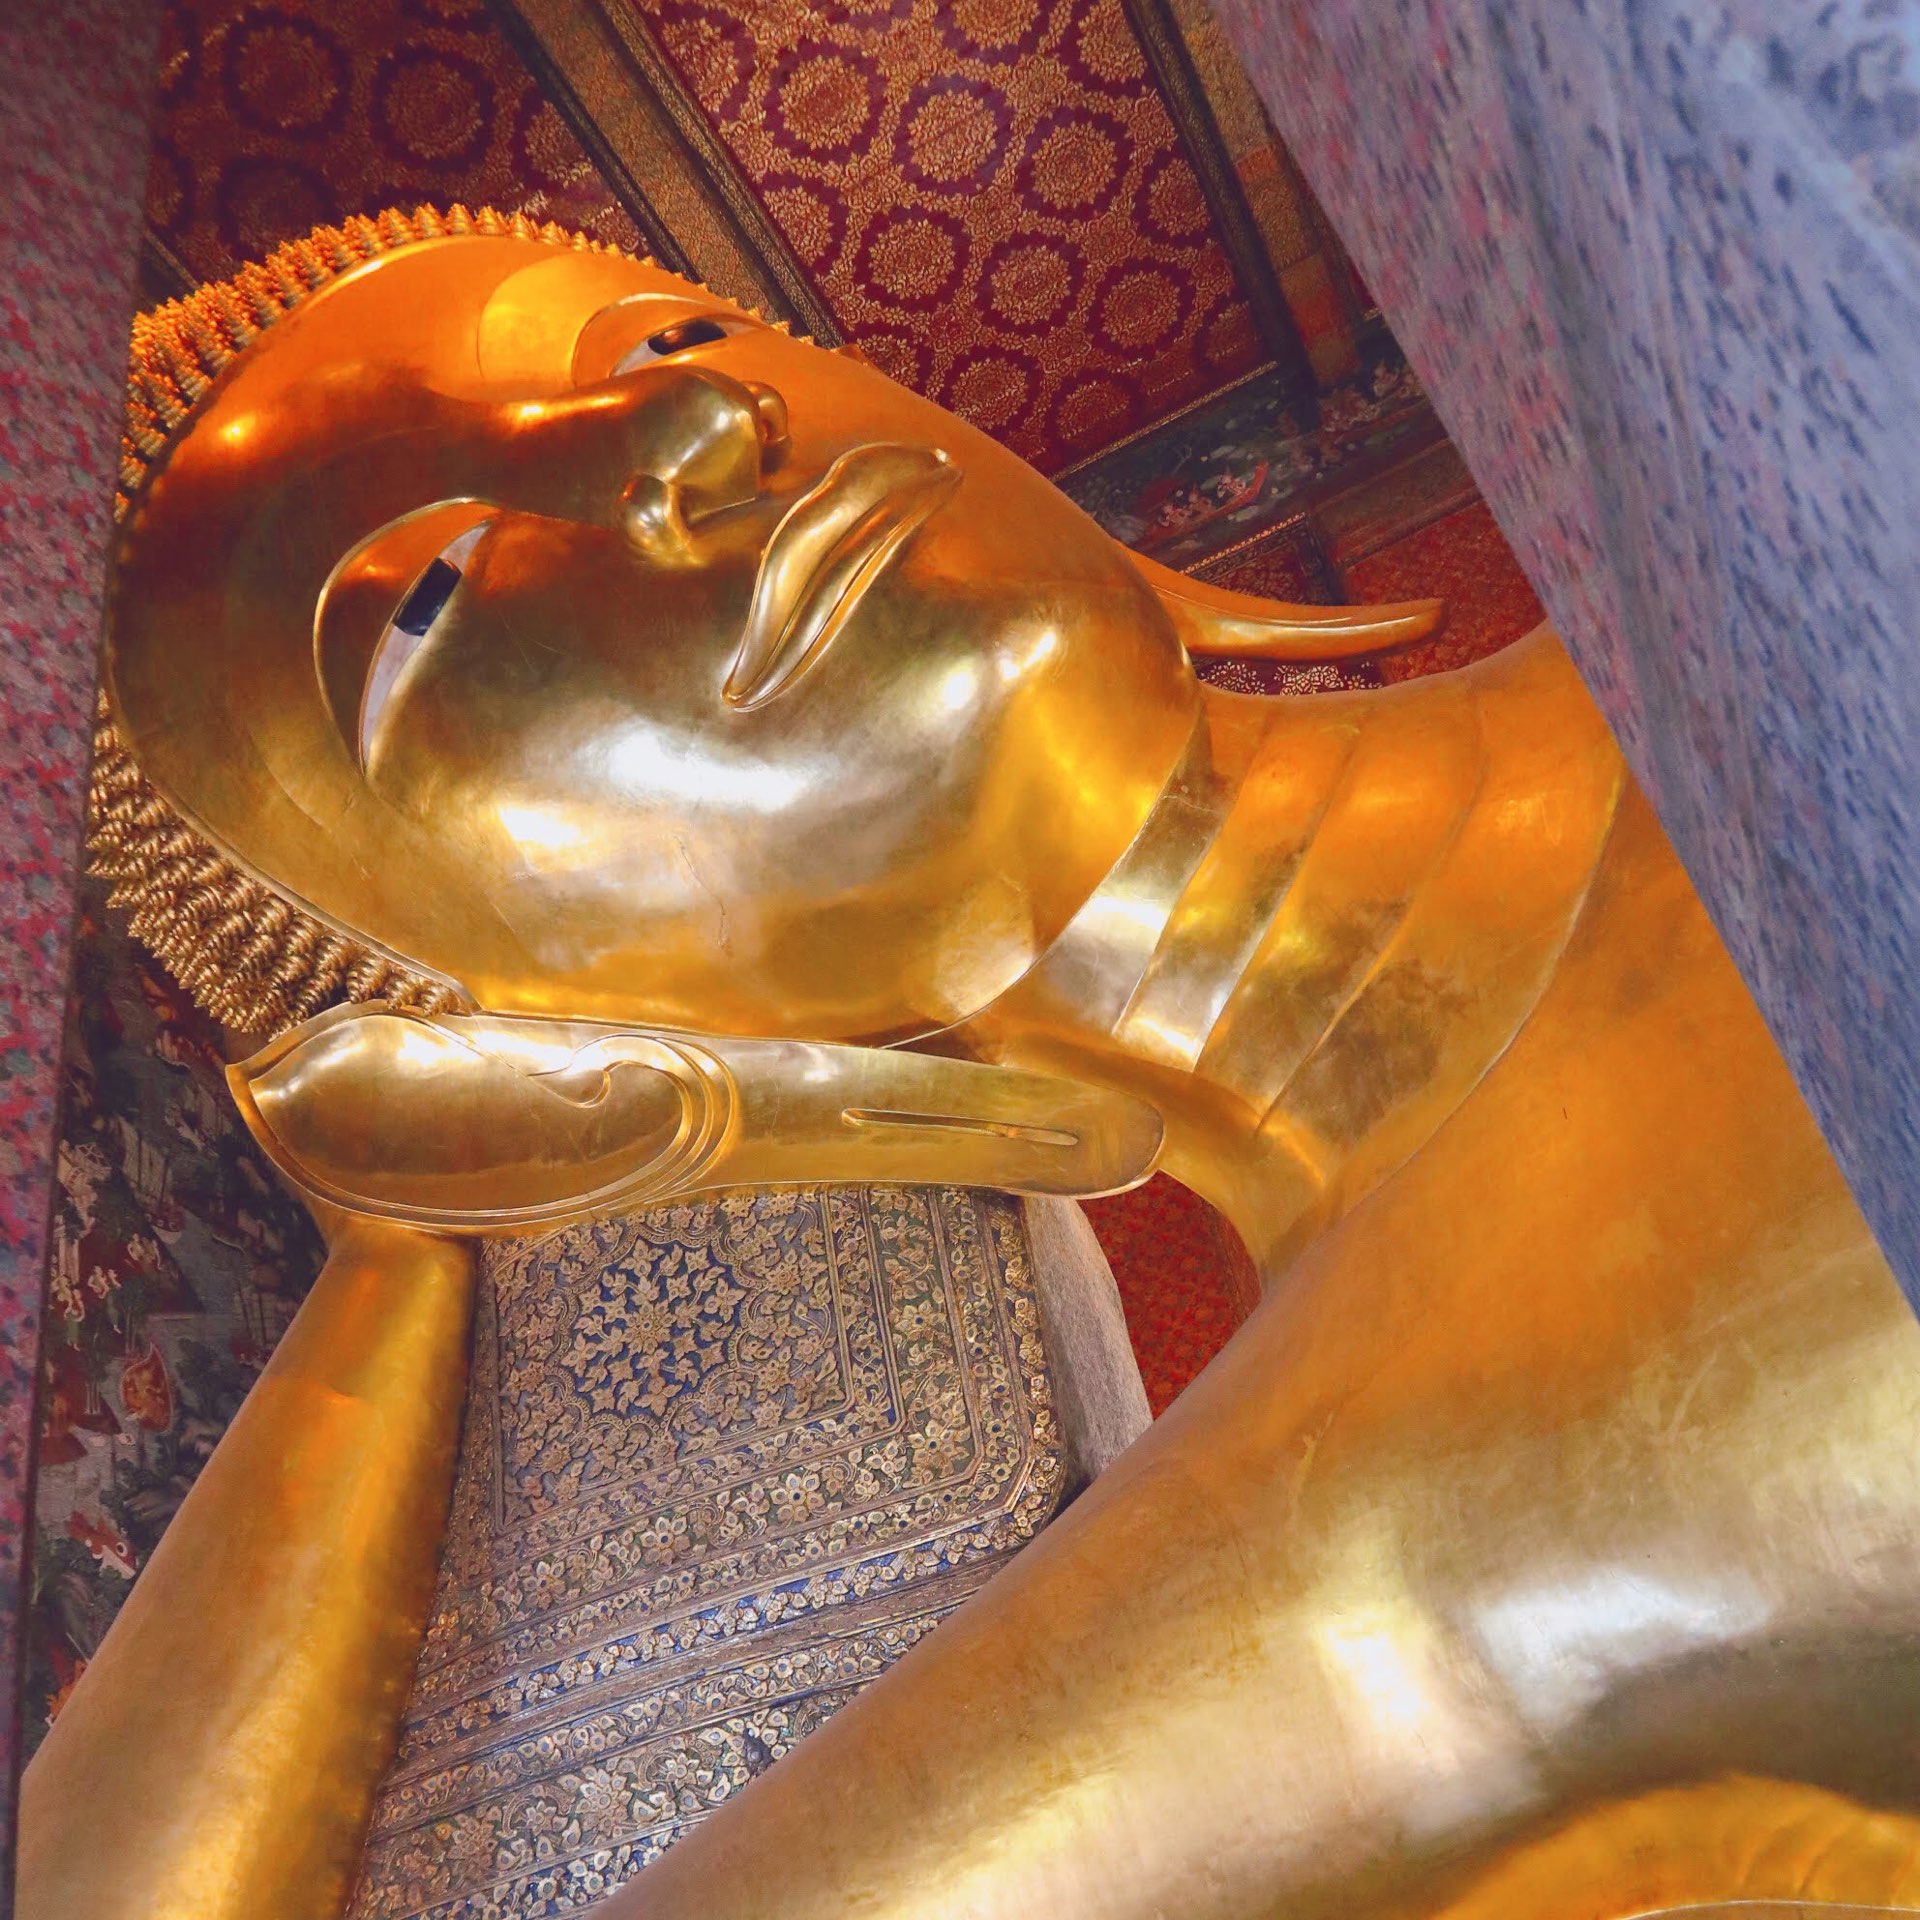 来到泰国必看👀✨巨大的涅雕像闪耀着金色的光芒